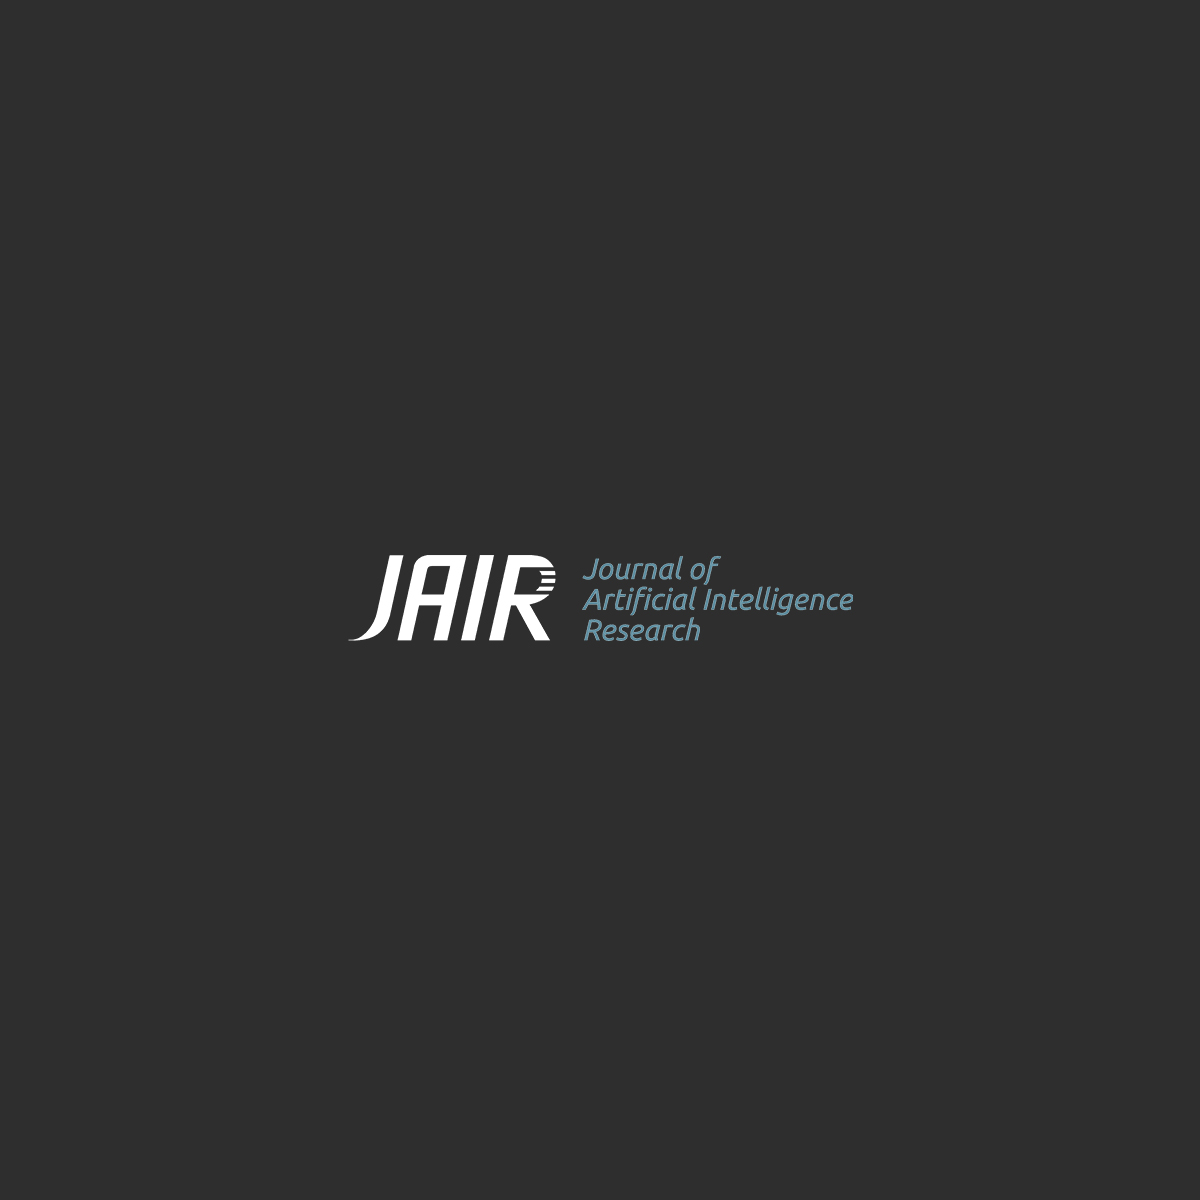 JAIR-logo